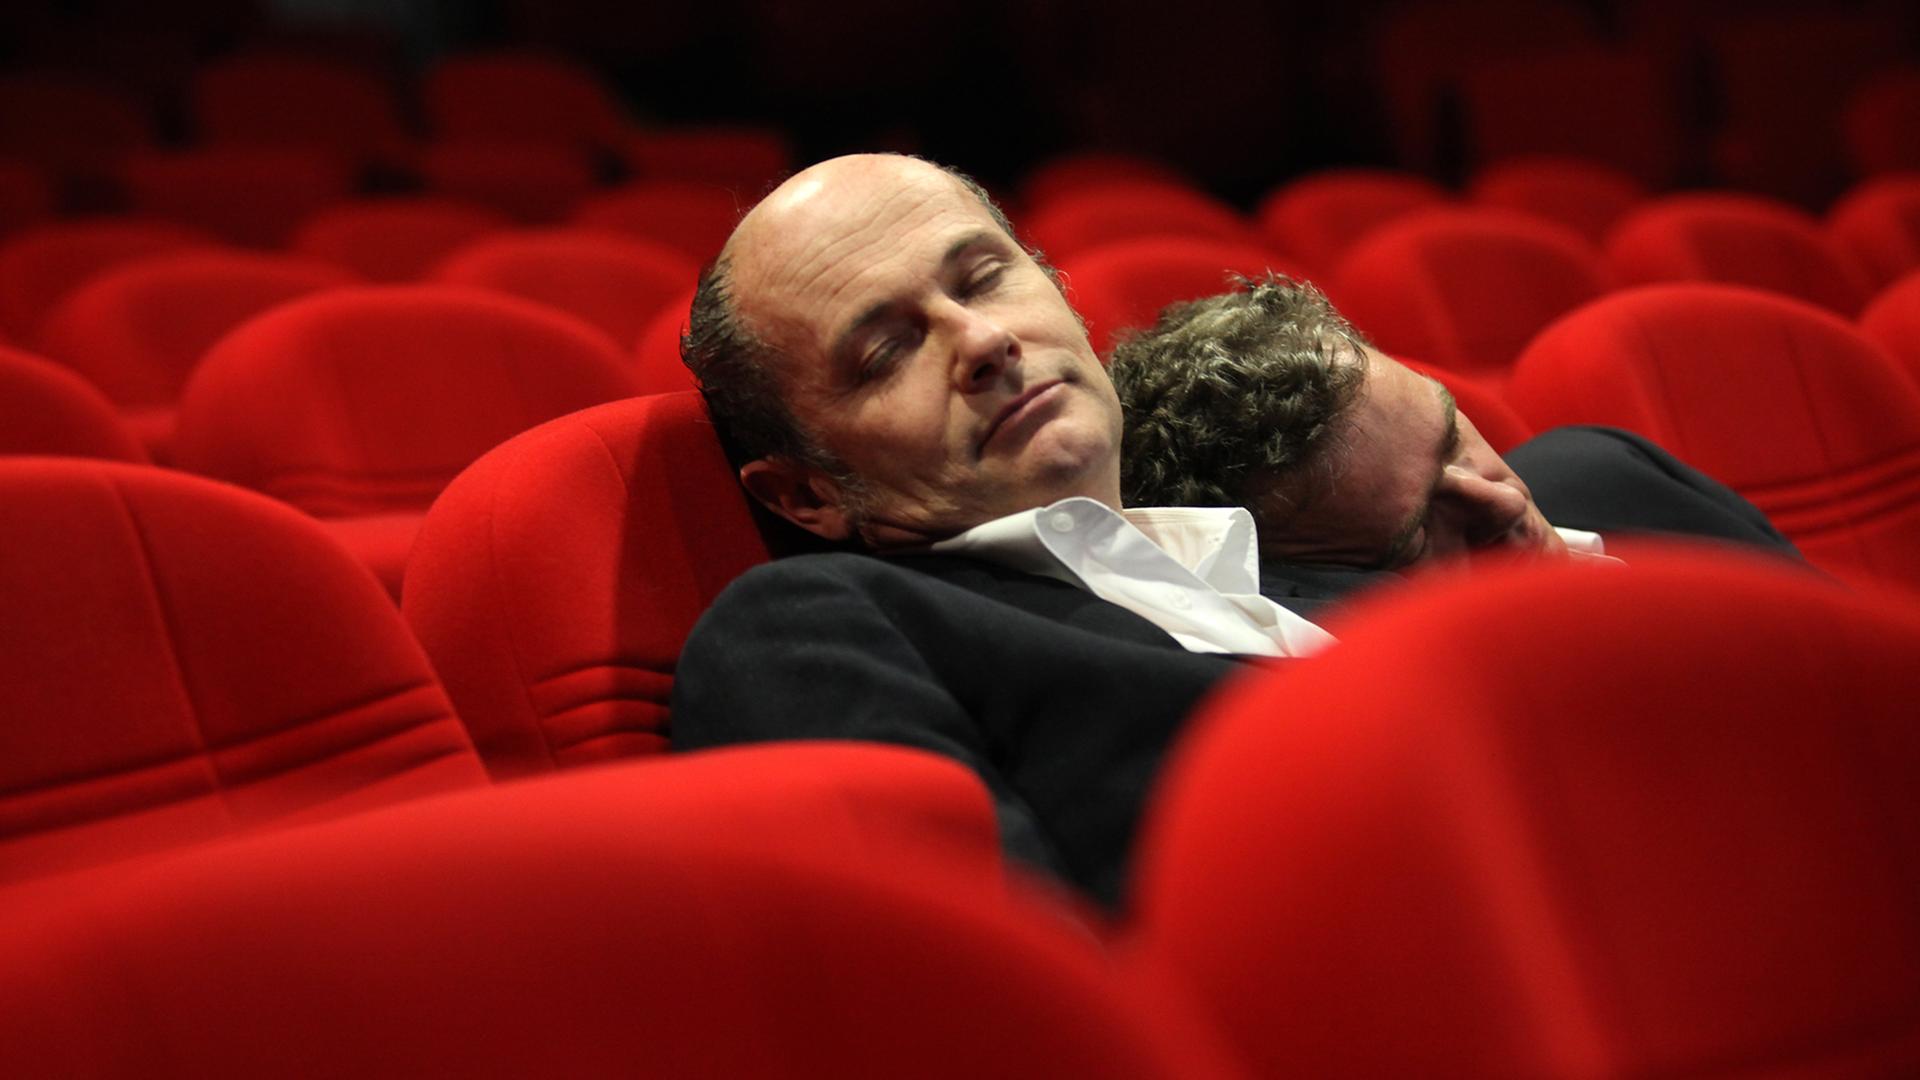 Pigor & Eichhorn liegen aneinandergelehnt und schlafend in roten Theatersesseln.